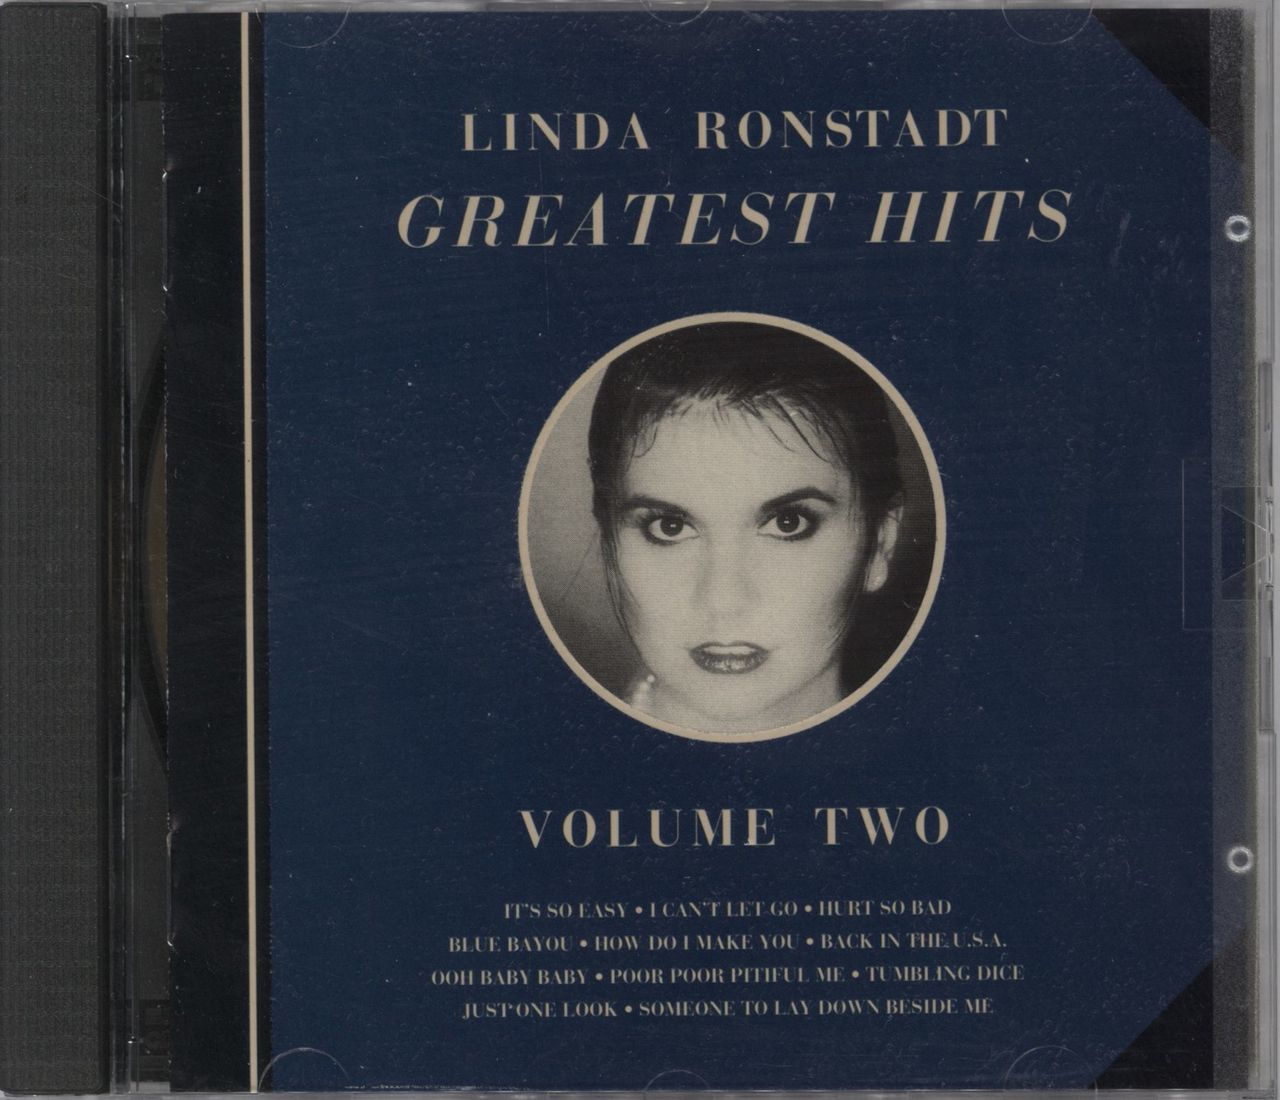 Linda Ronstadt Greatest Hits Volume Two US CD album — RareVinyl.com